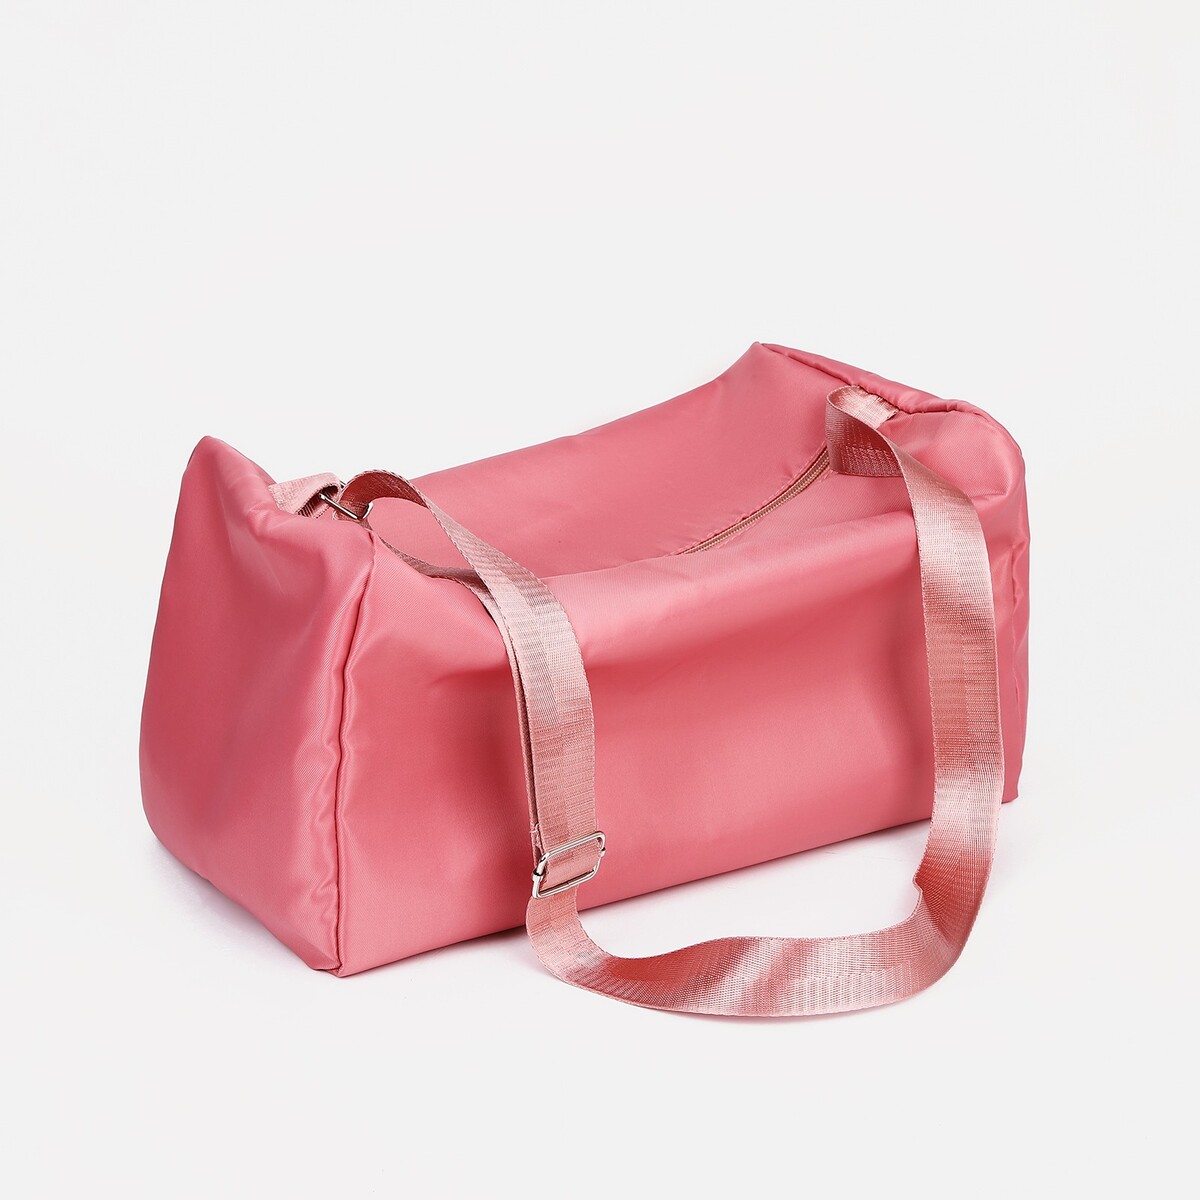 Сумка спортивная на молнии, регулируемый ремень, цвет розовый сумка спортивная meow 40х24х21 отделение на молнии длинный ремень розовый